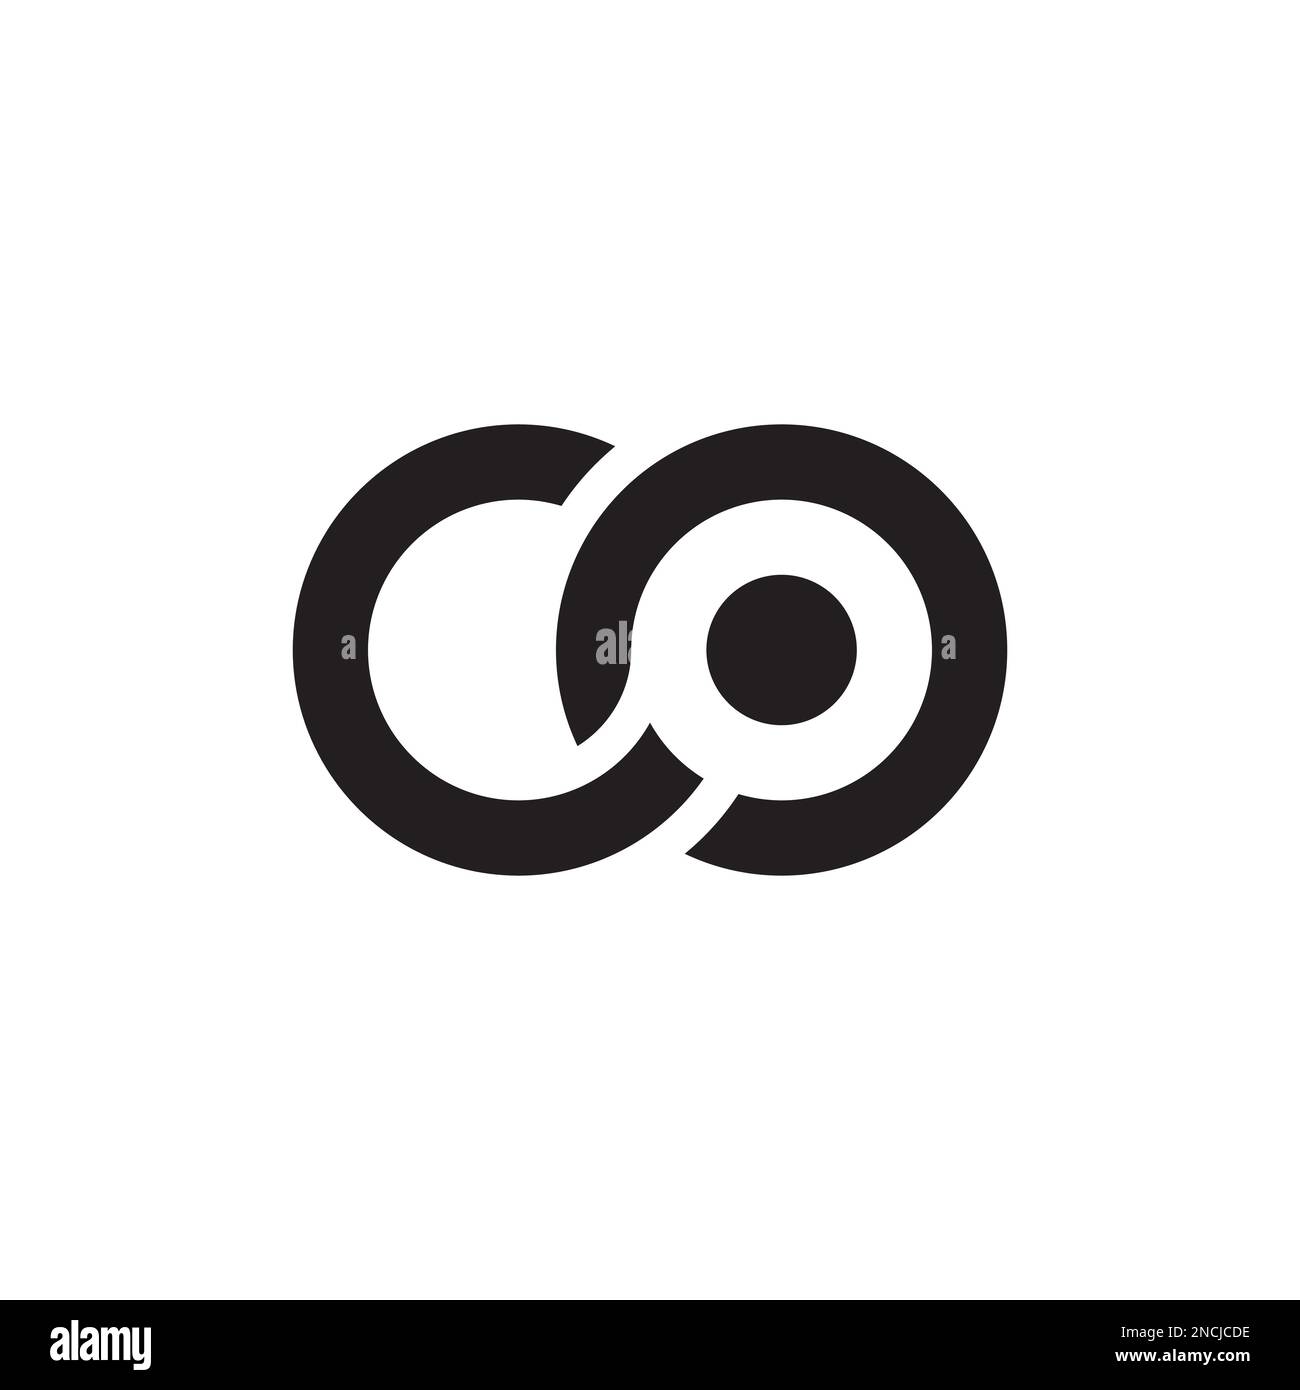 Cannabis Logo Ideas: Make Your Own Cannabis Logo - Looka